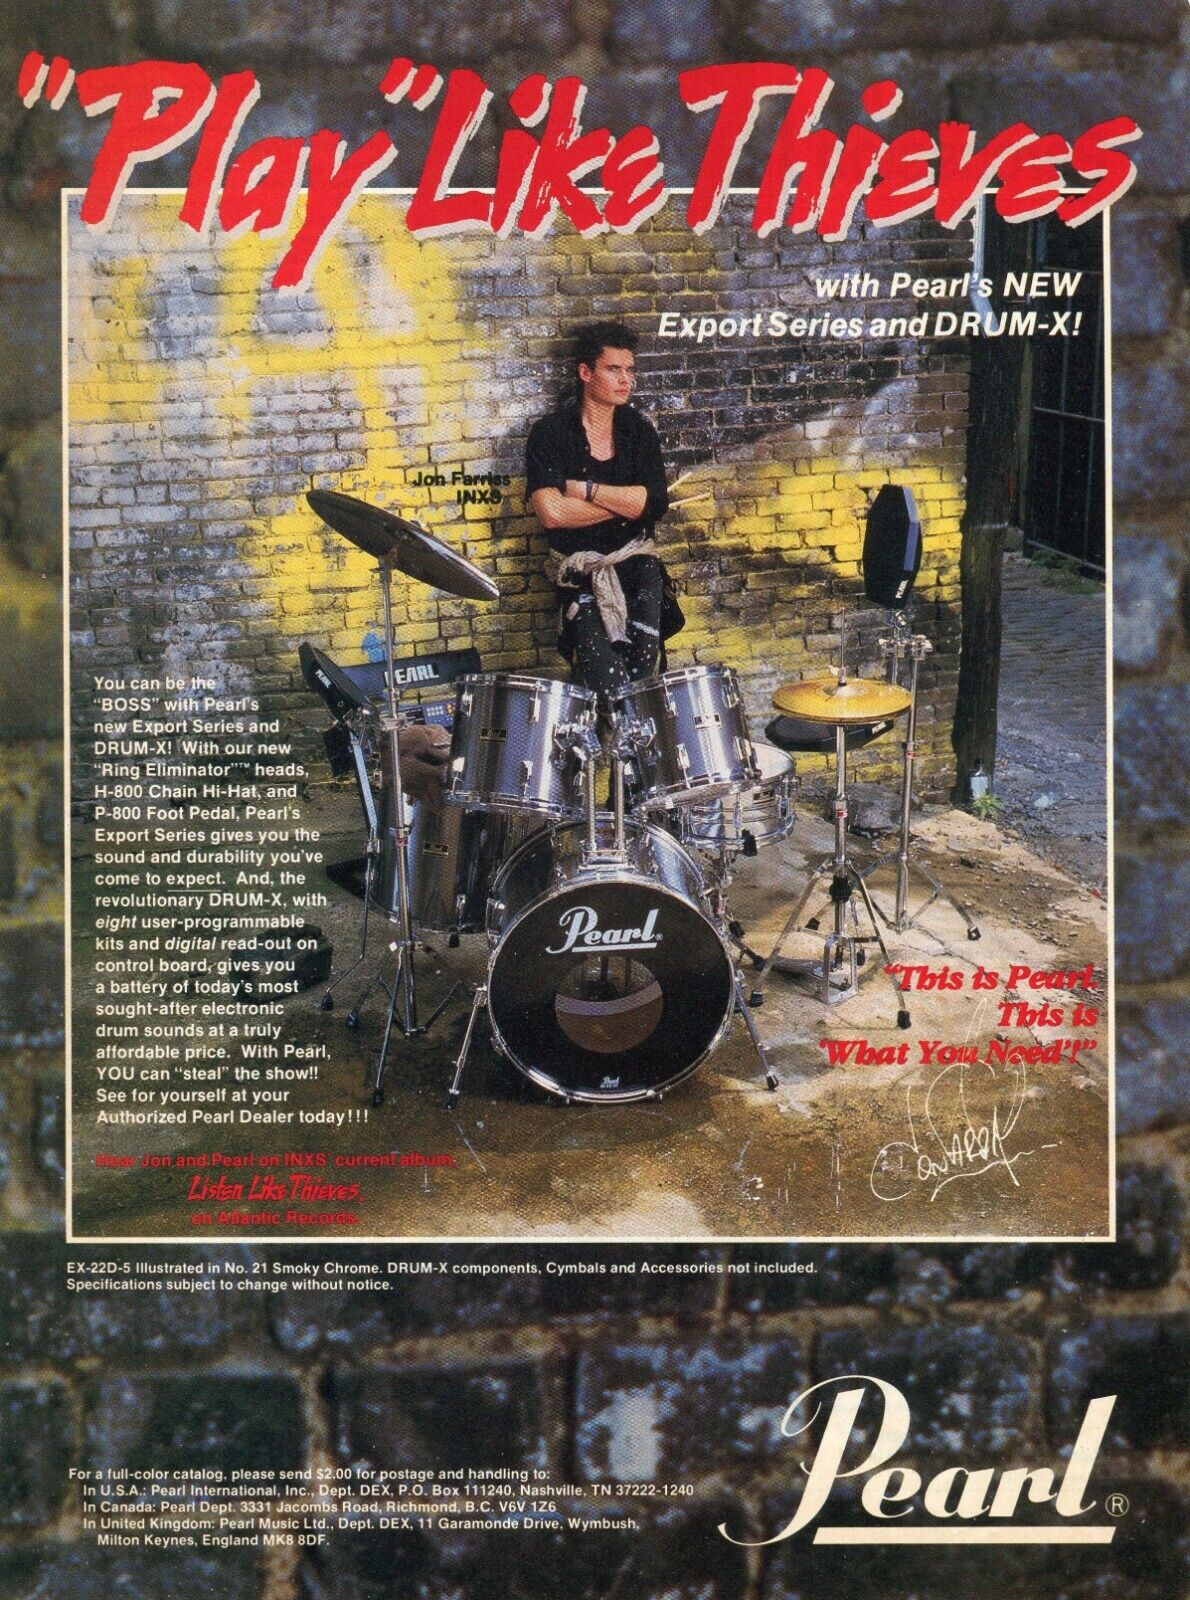 1987 Print Ad of Pearl Export Series Drum Kit w Jon Farriss INXS